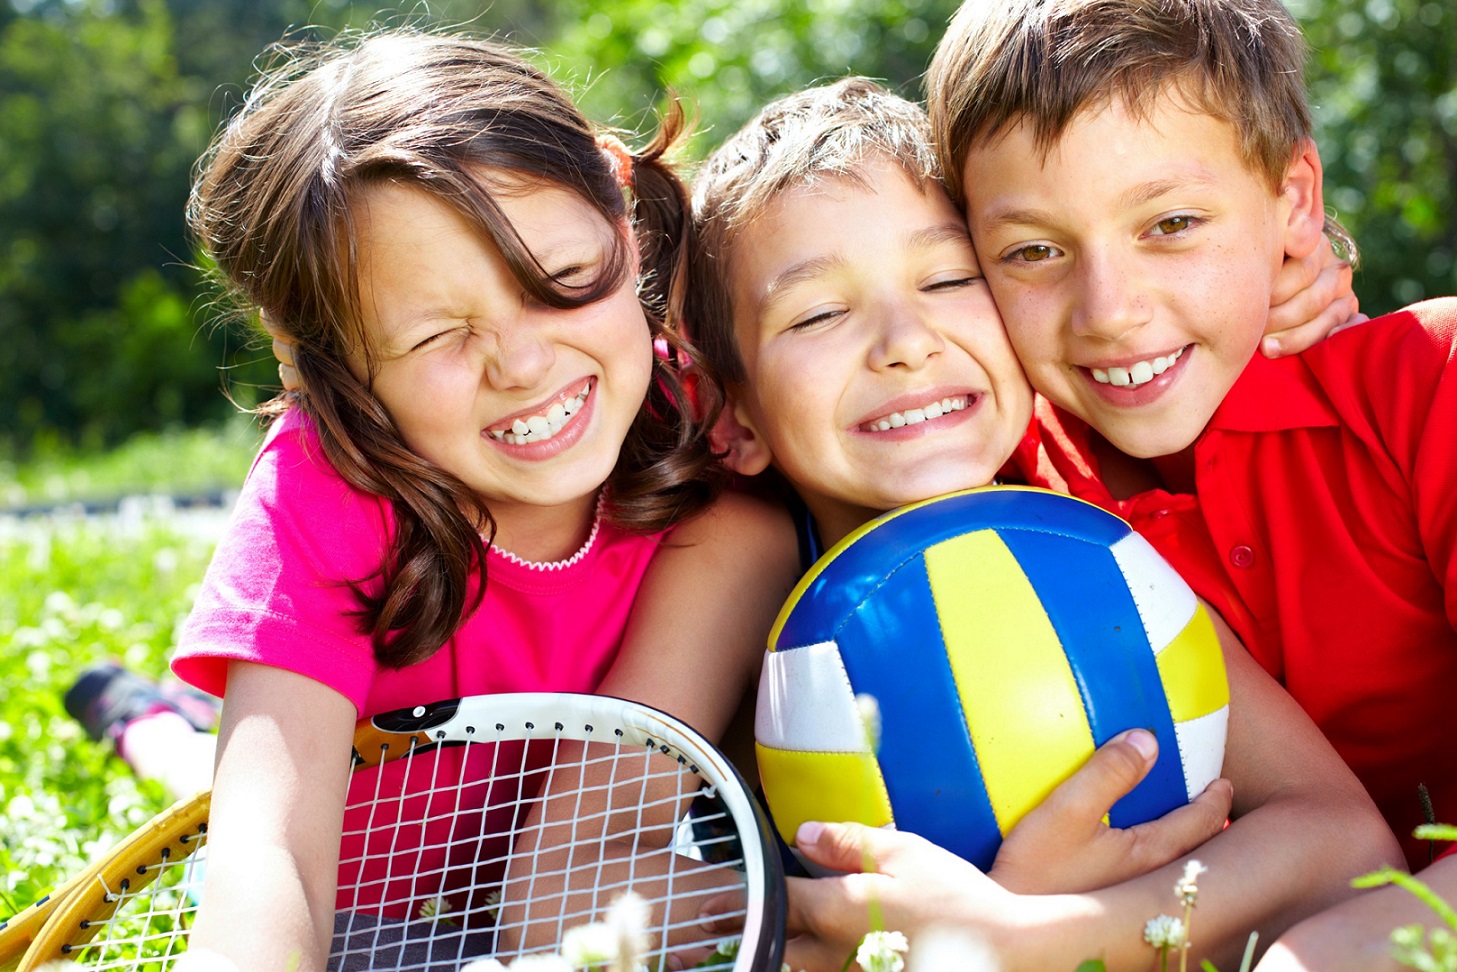 Η άθληση λειτουργεί θετικά για την υγεία των παιδιών